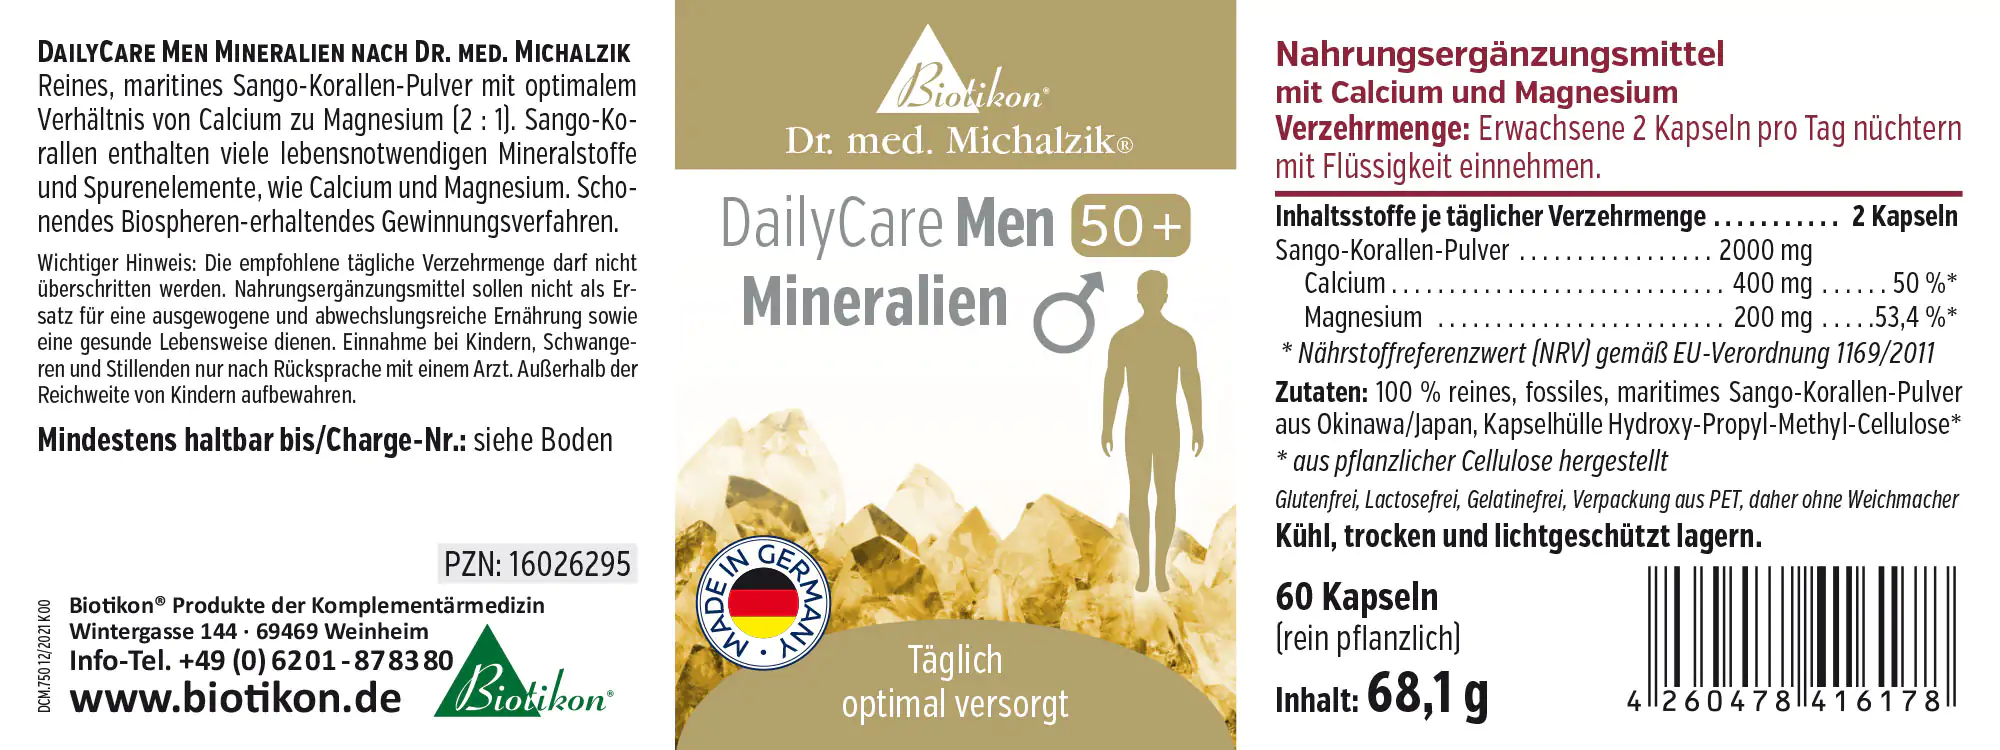 DailyCare Men 50+ Mineralien